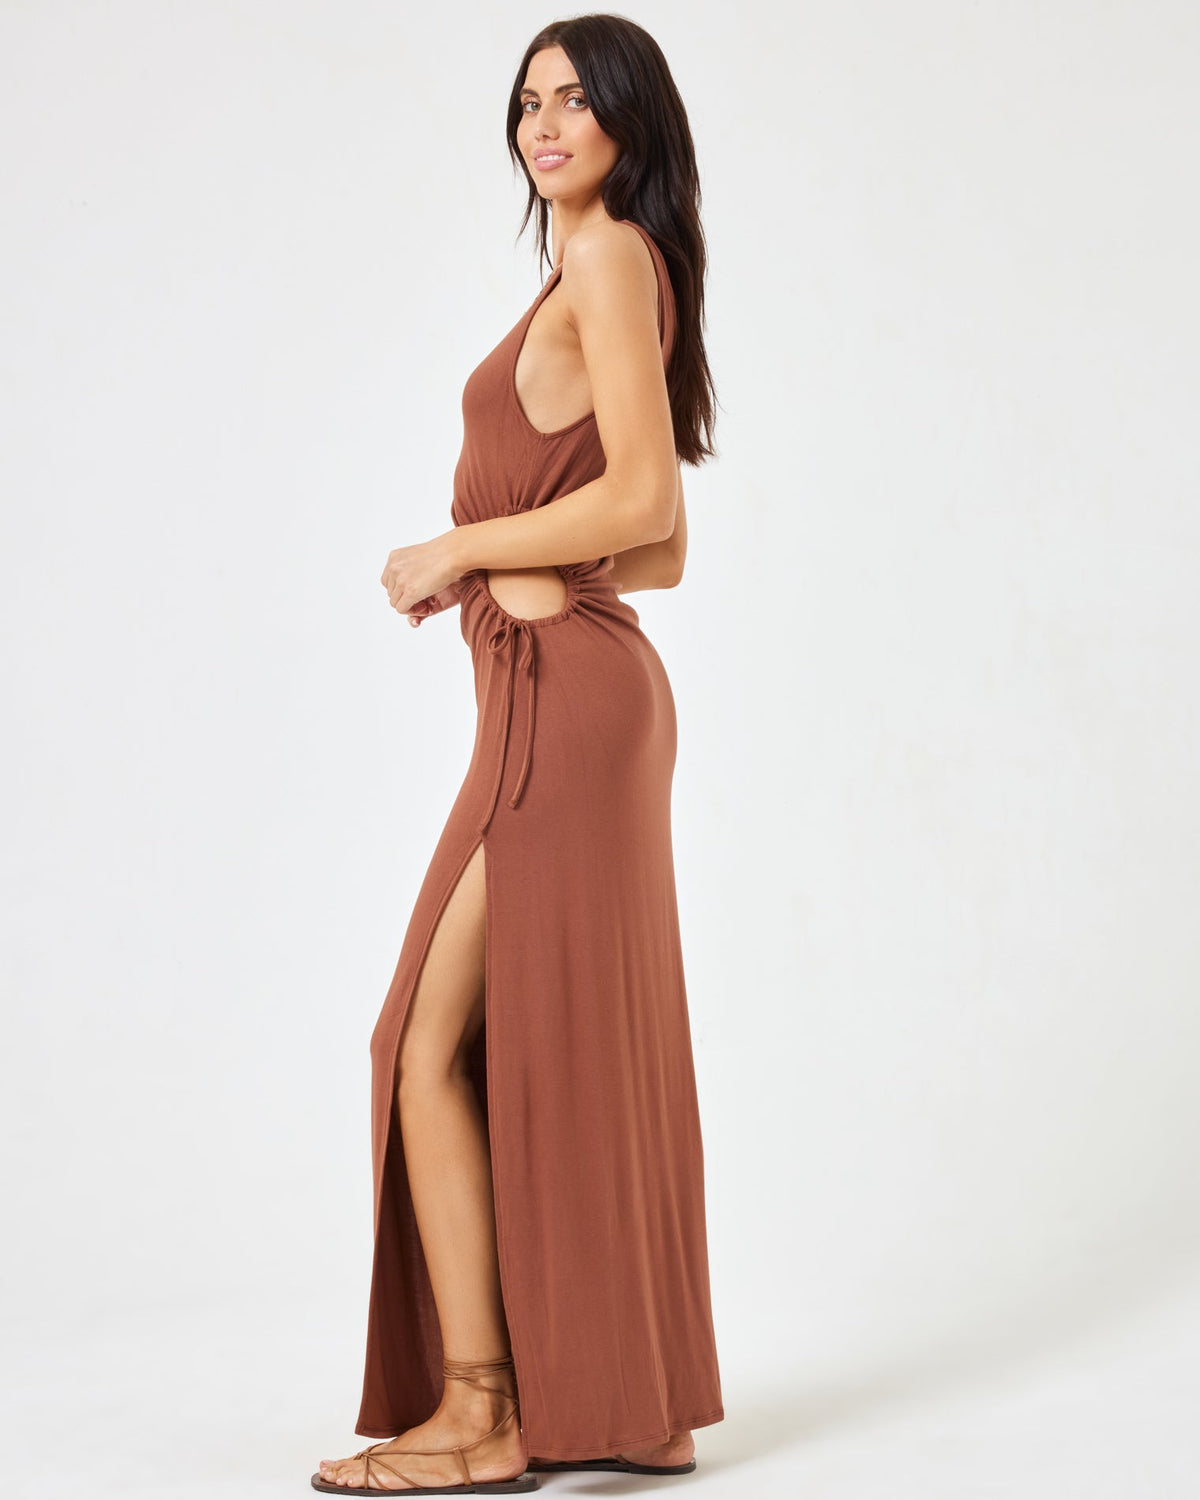 Tiana Dress Coffee | Model: Diana (size: S)